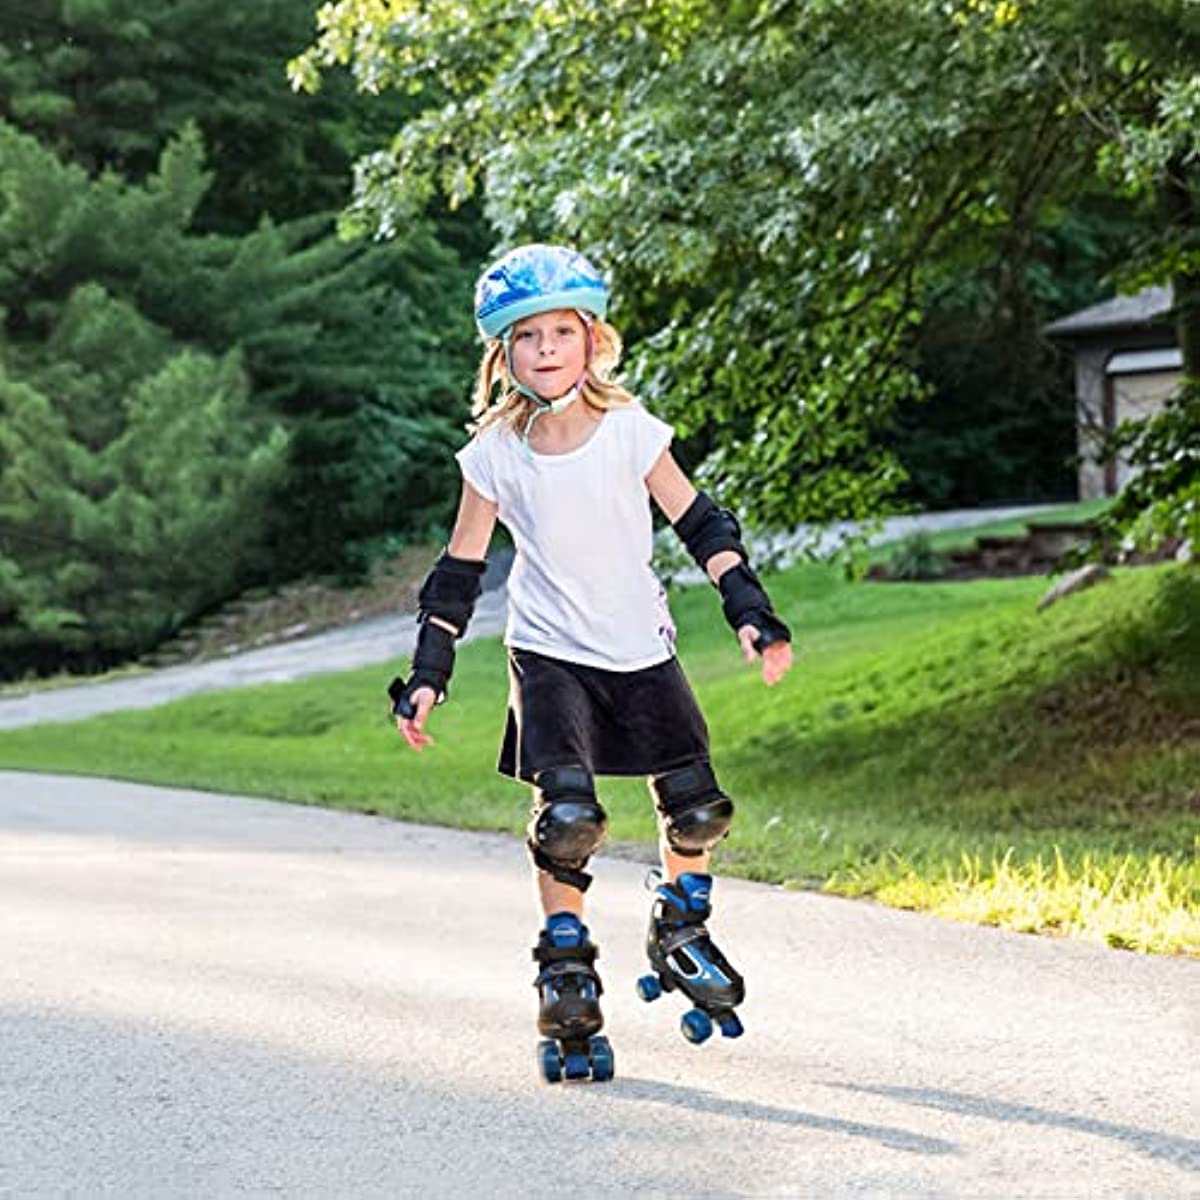 Nattork Adjustable Roller Skates for Kids - Black & Blue